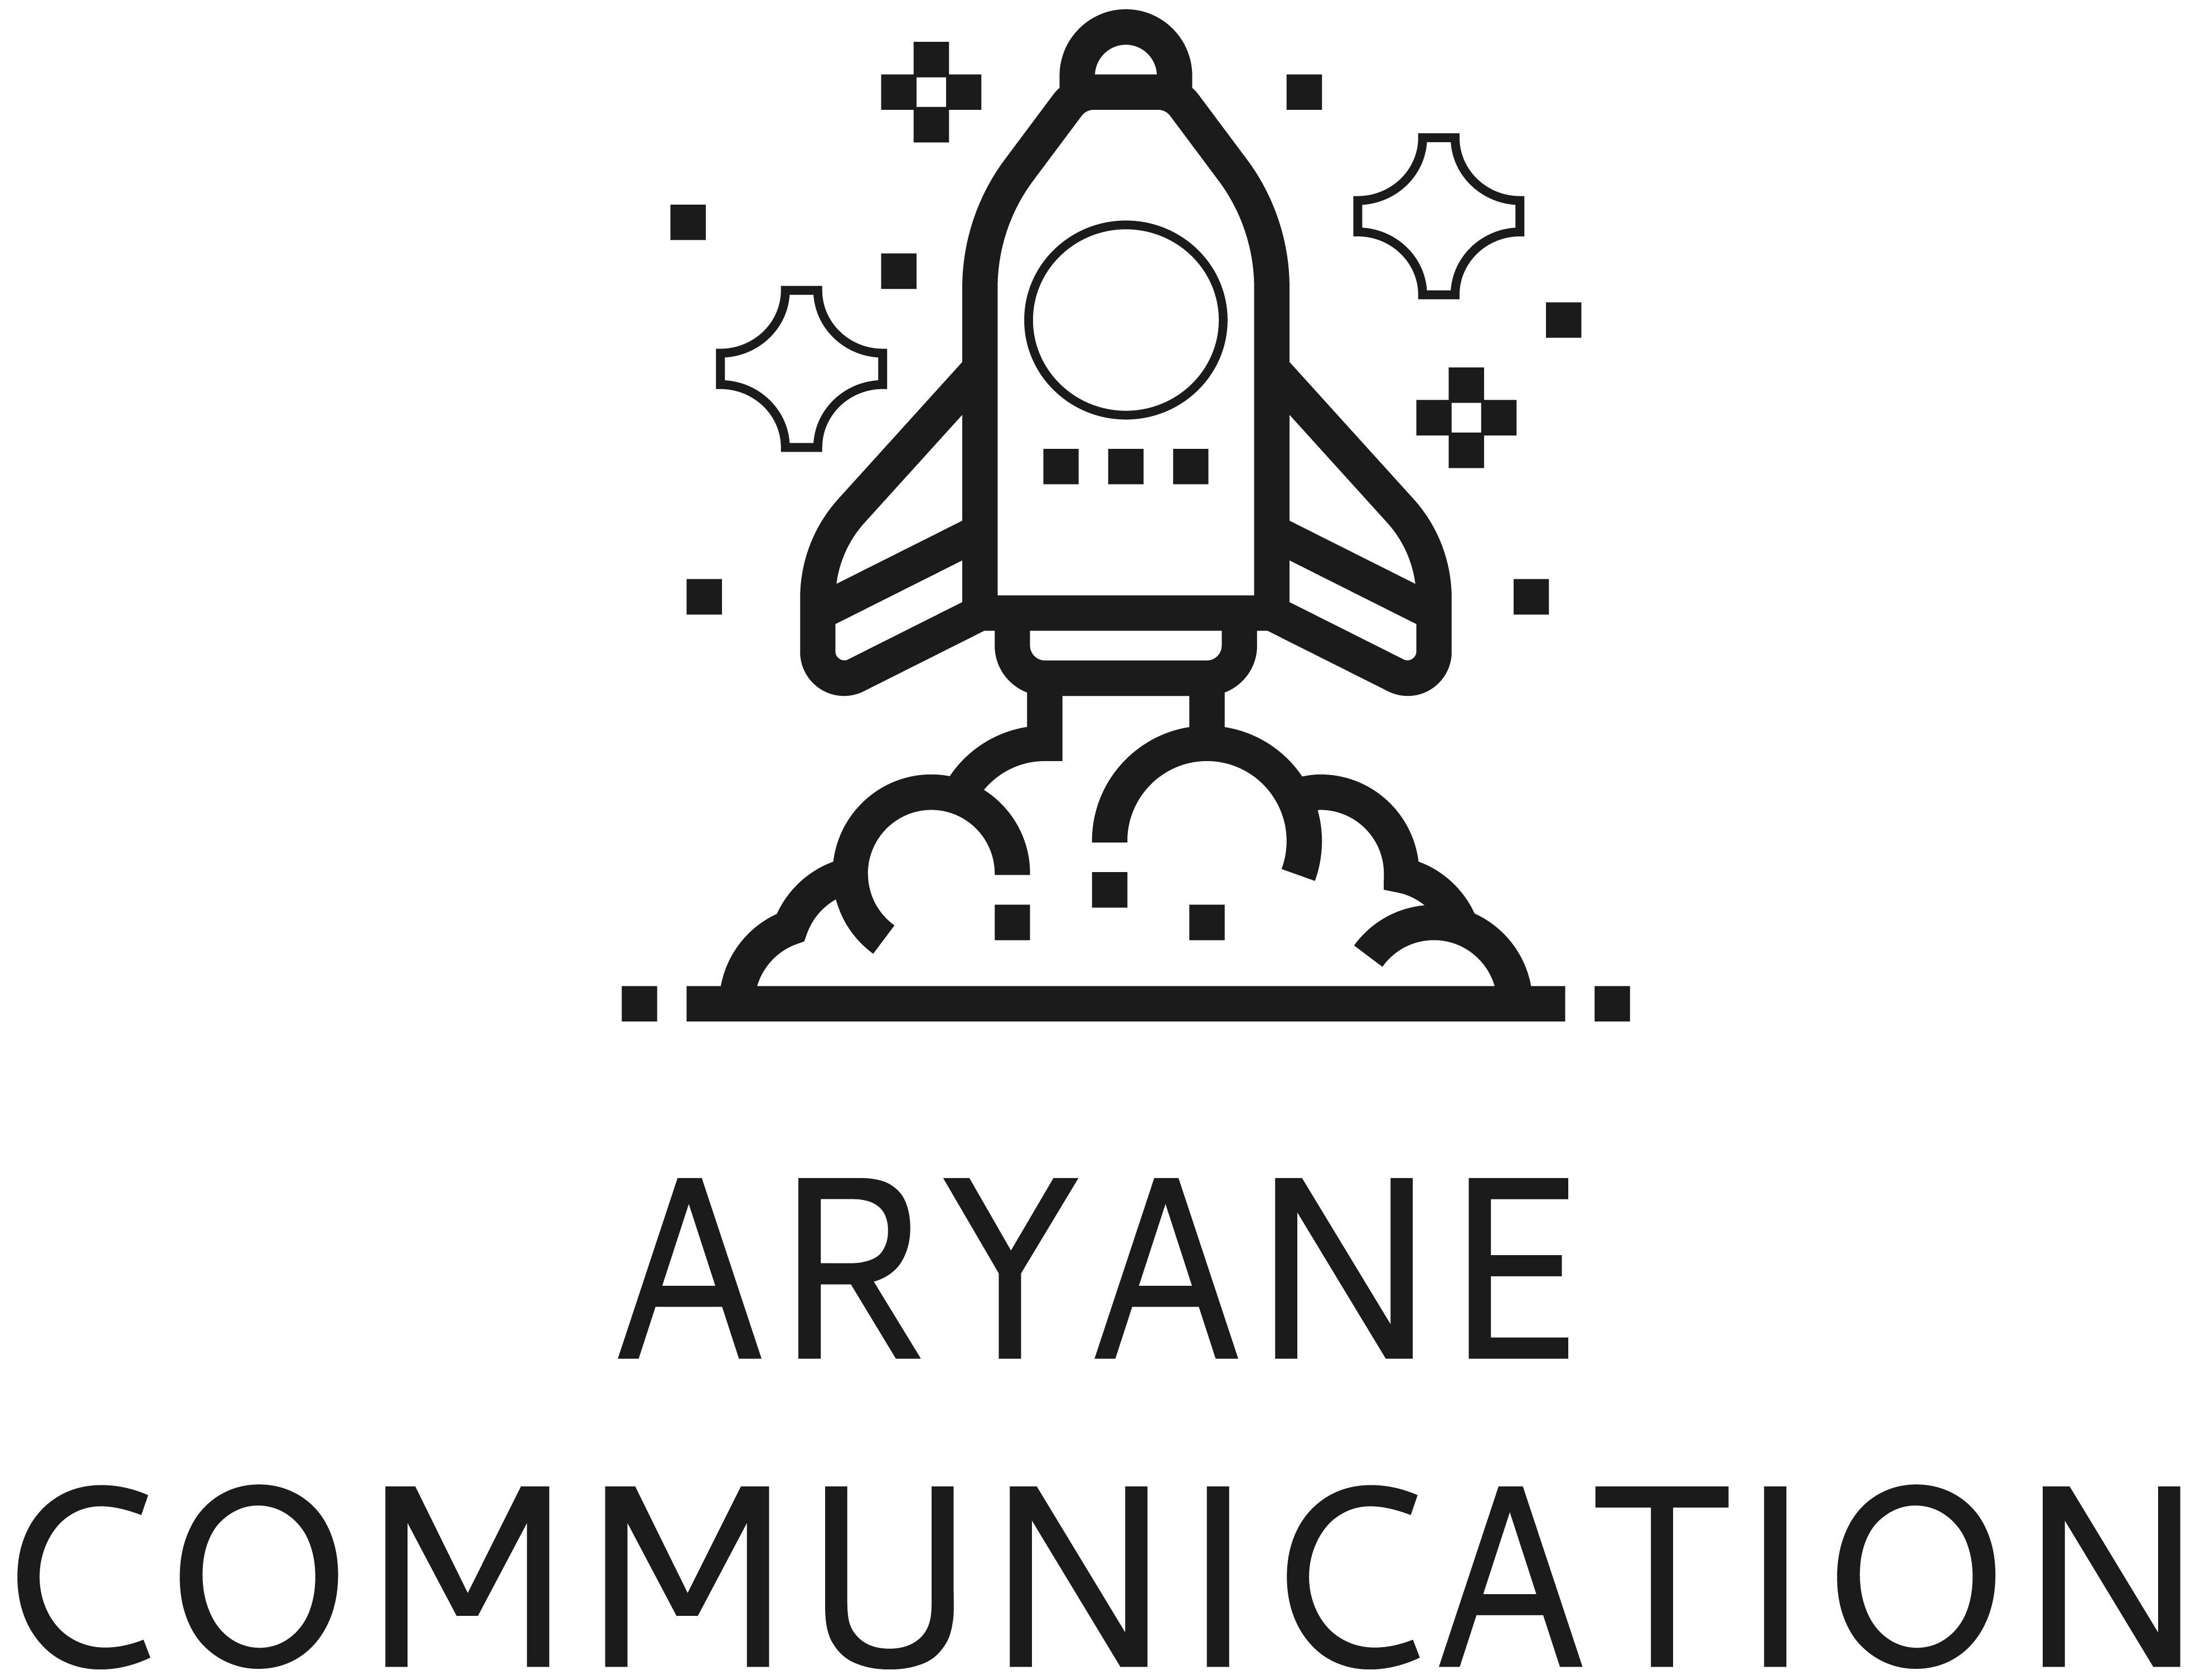 Aryane communication